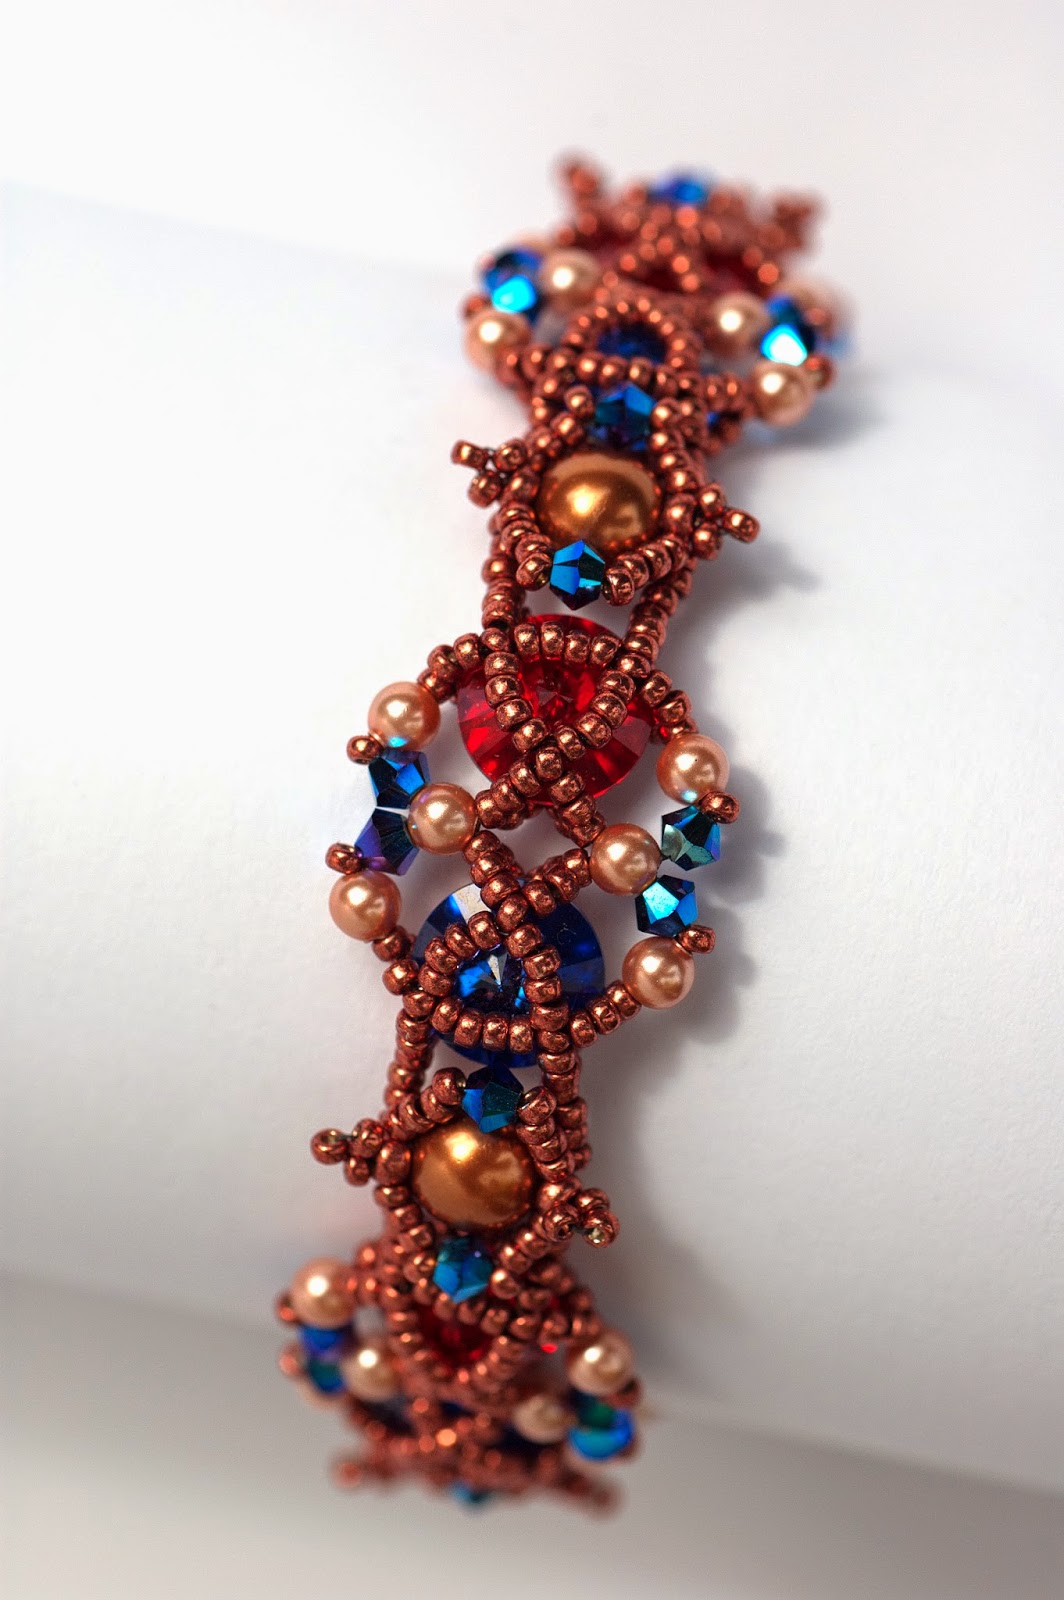 Bracelet Arabesque beading pattern by PrettyNett.de